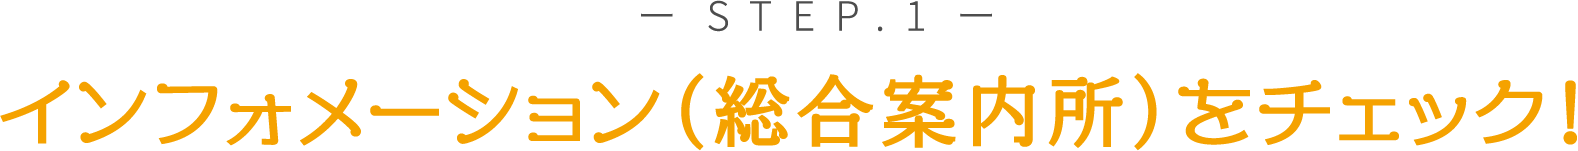 STEP１ インフォメーション（総合案内所）をチェック